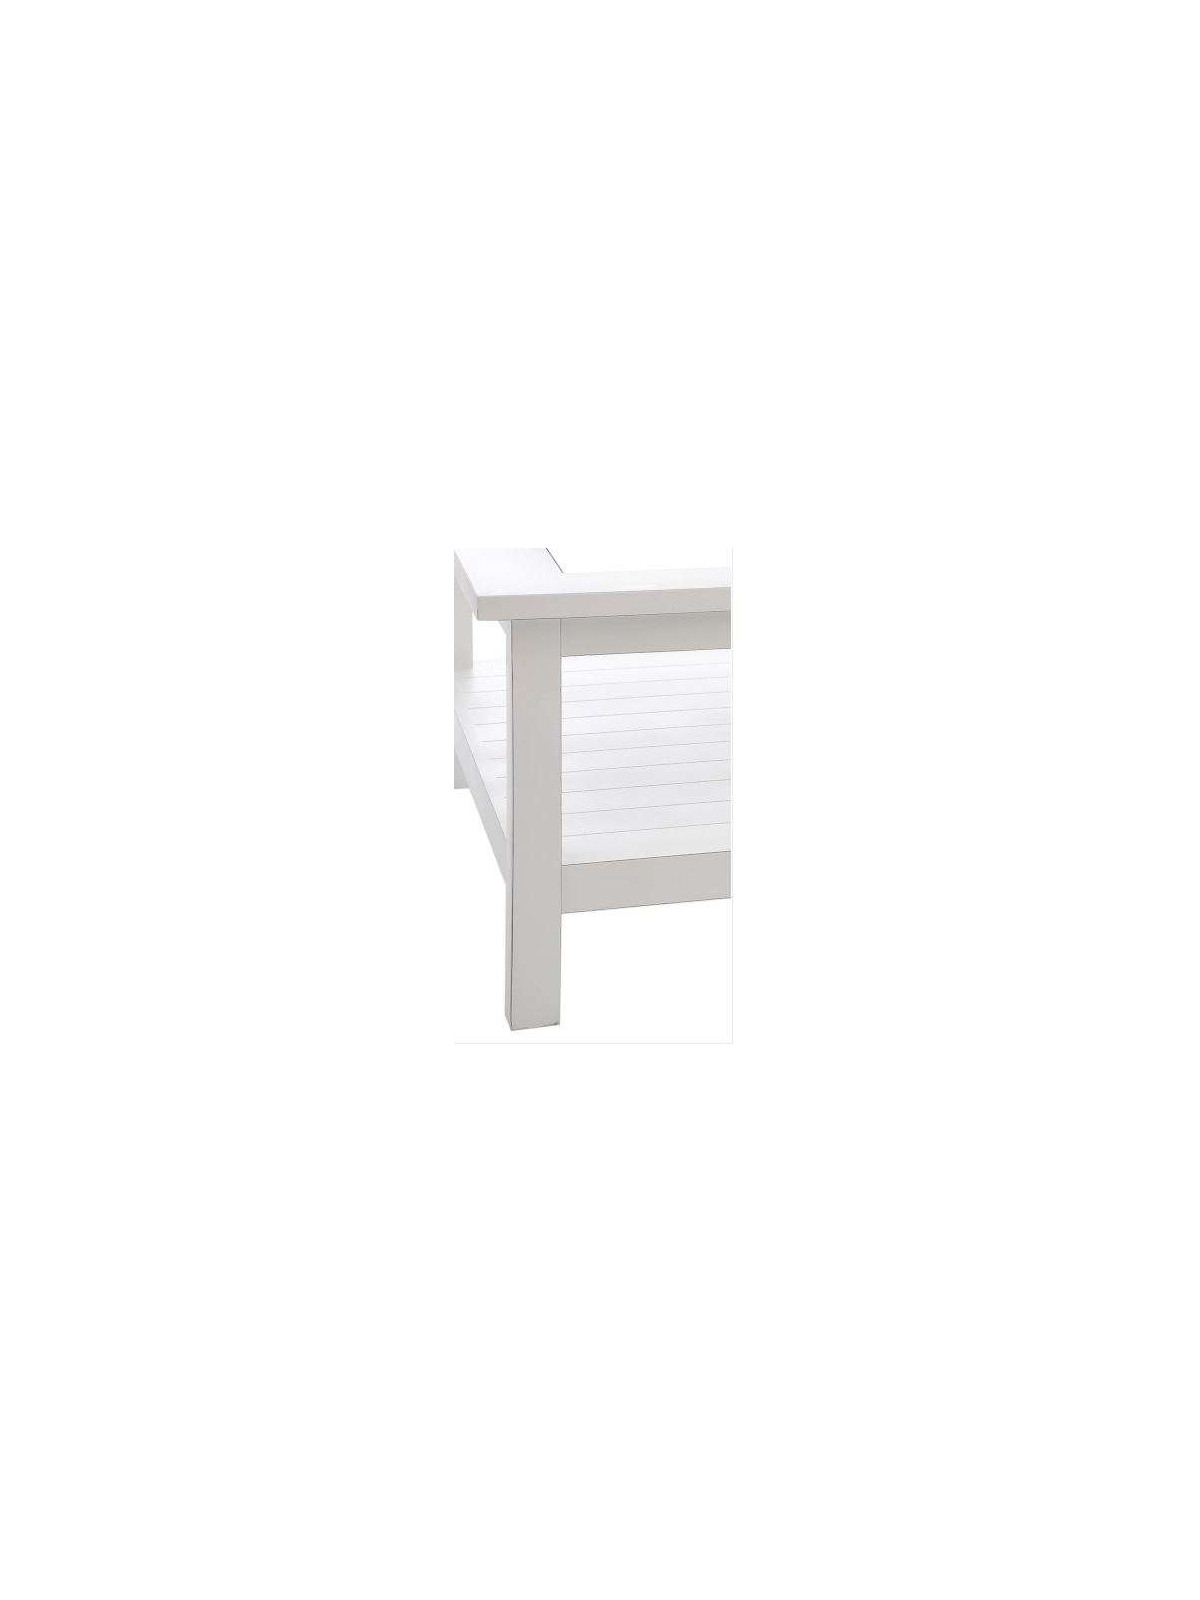 Table basse bois blanc et verre forme carrée